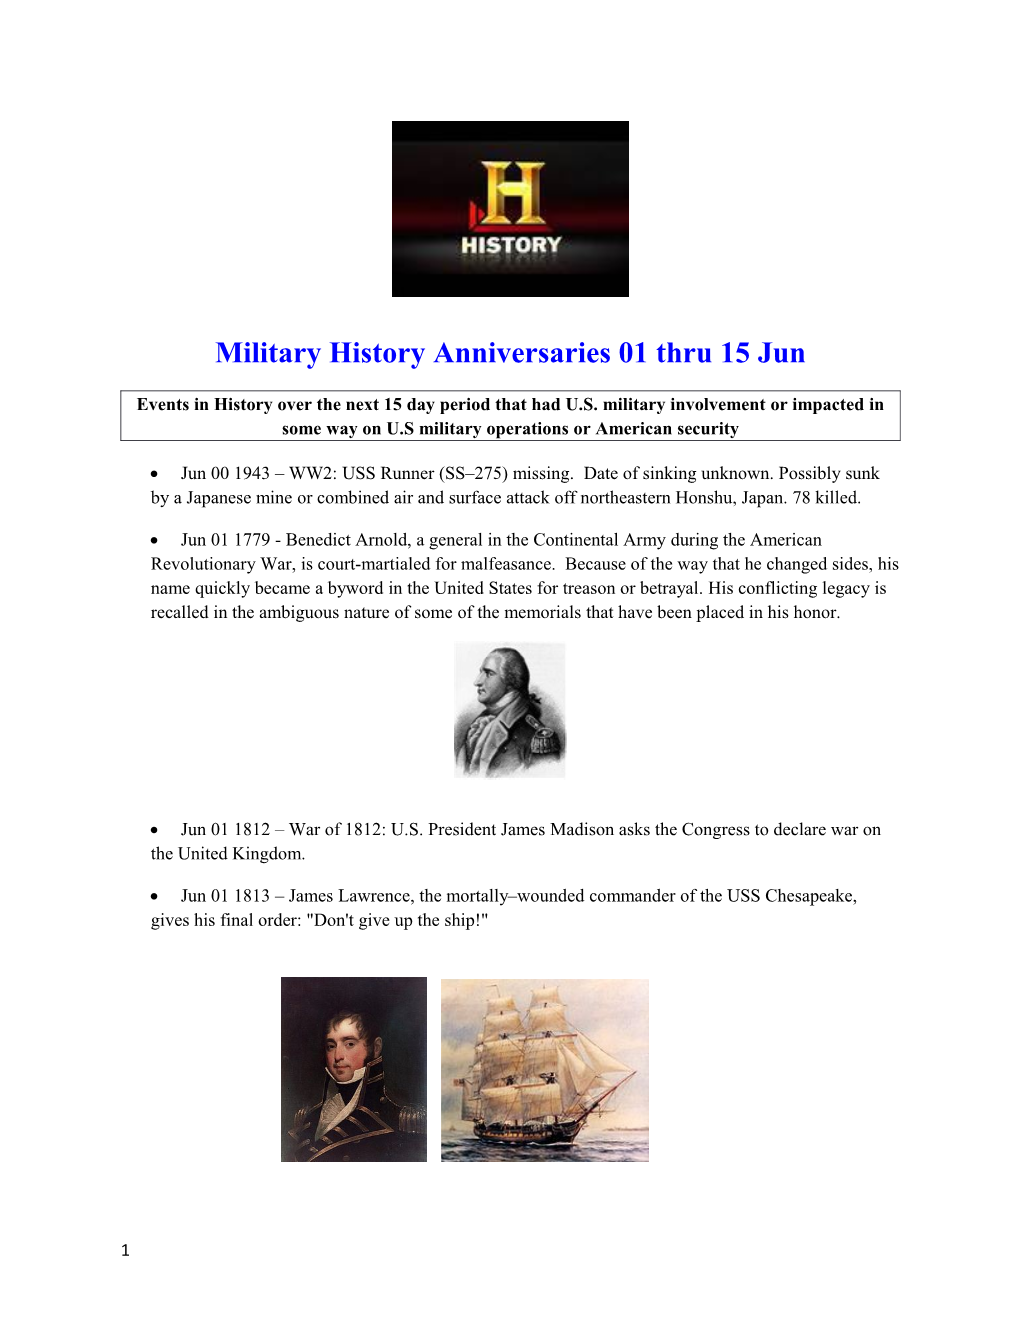 Military History Anniversaries01thru 15Jun